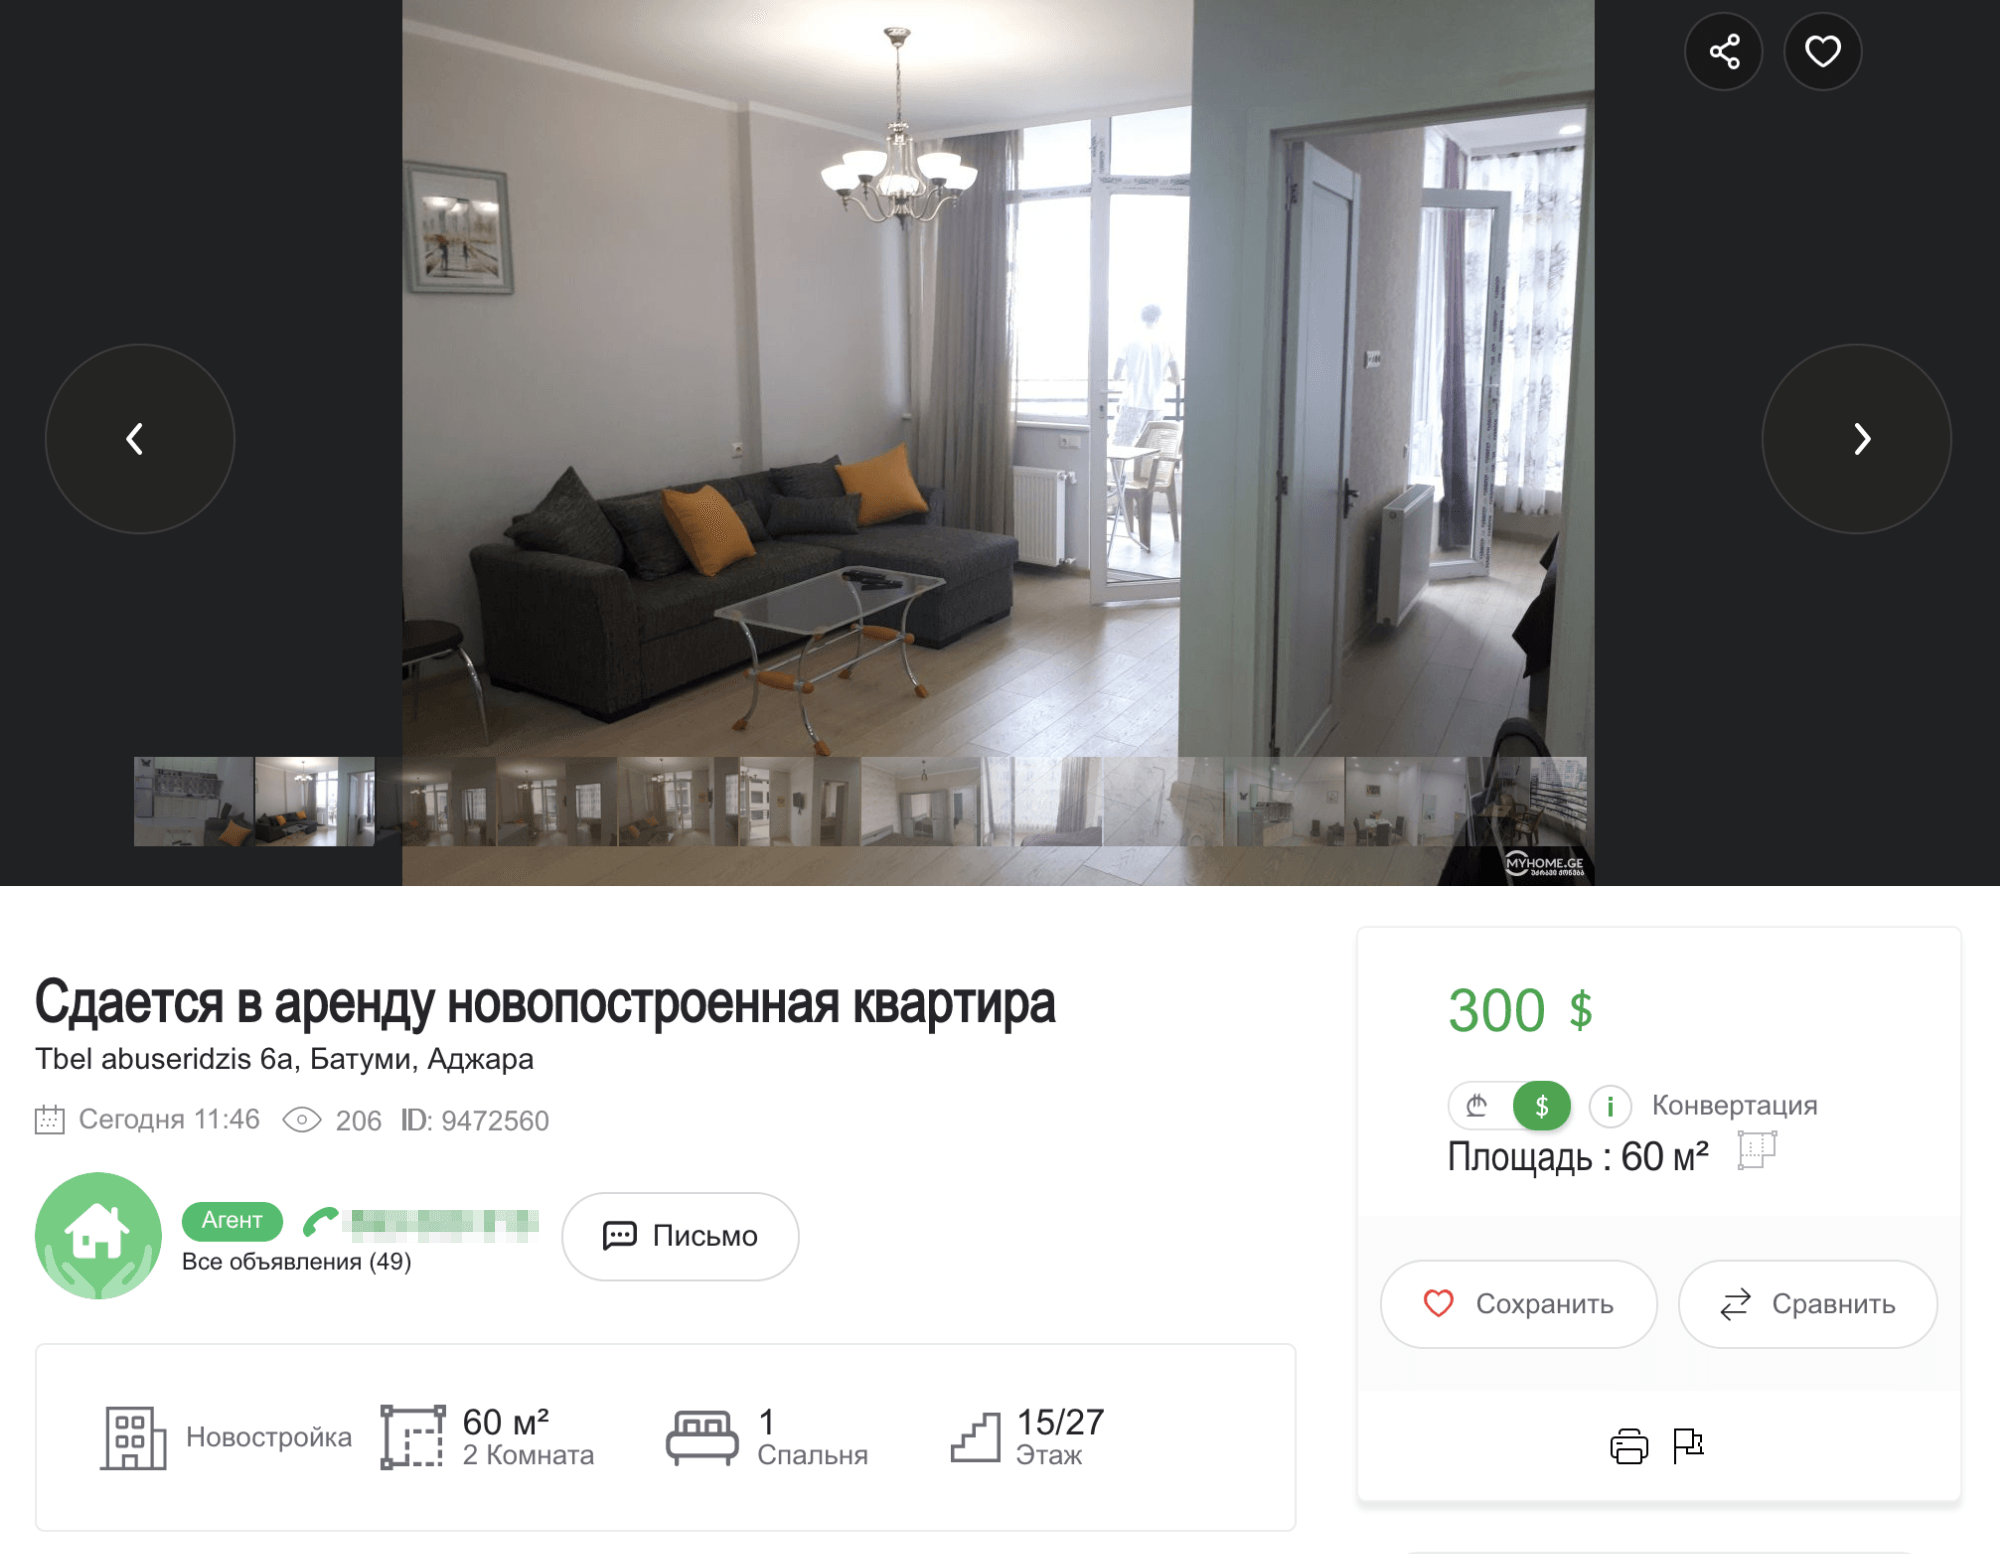 Похожая квартира, но дальше от моря стоит 300 $ в месяц